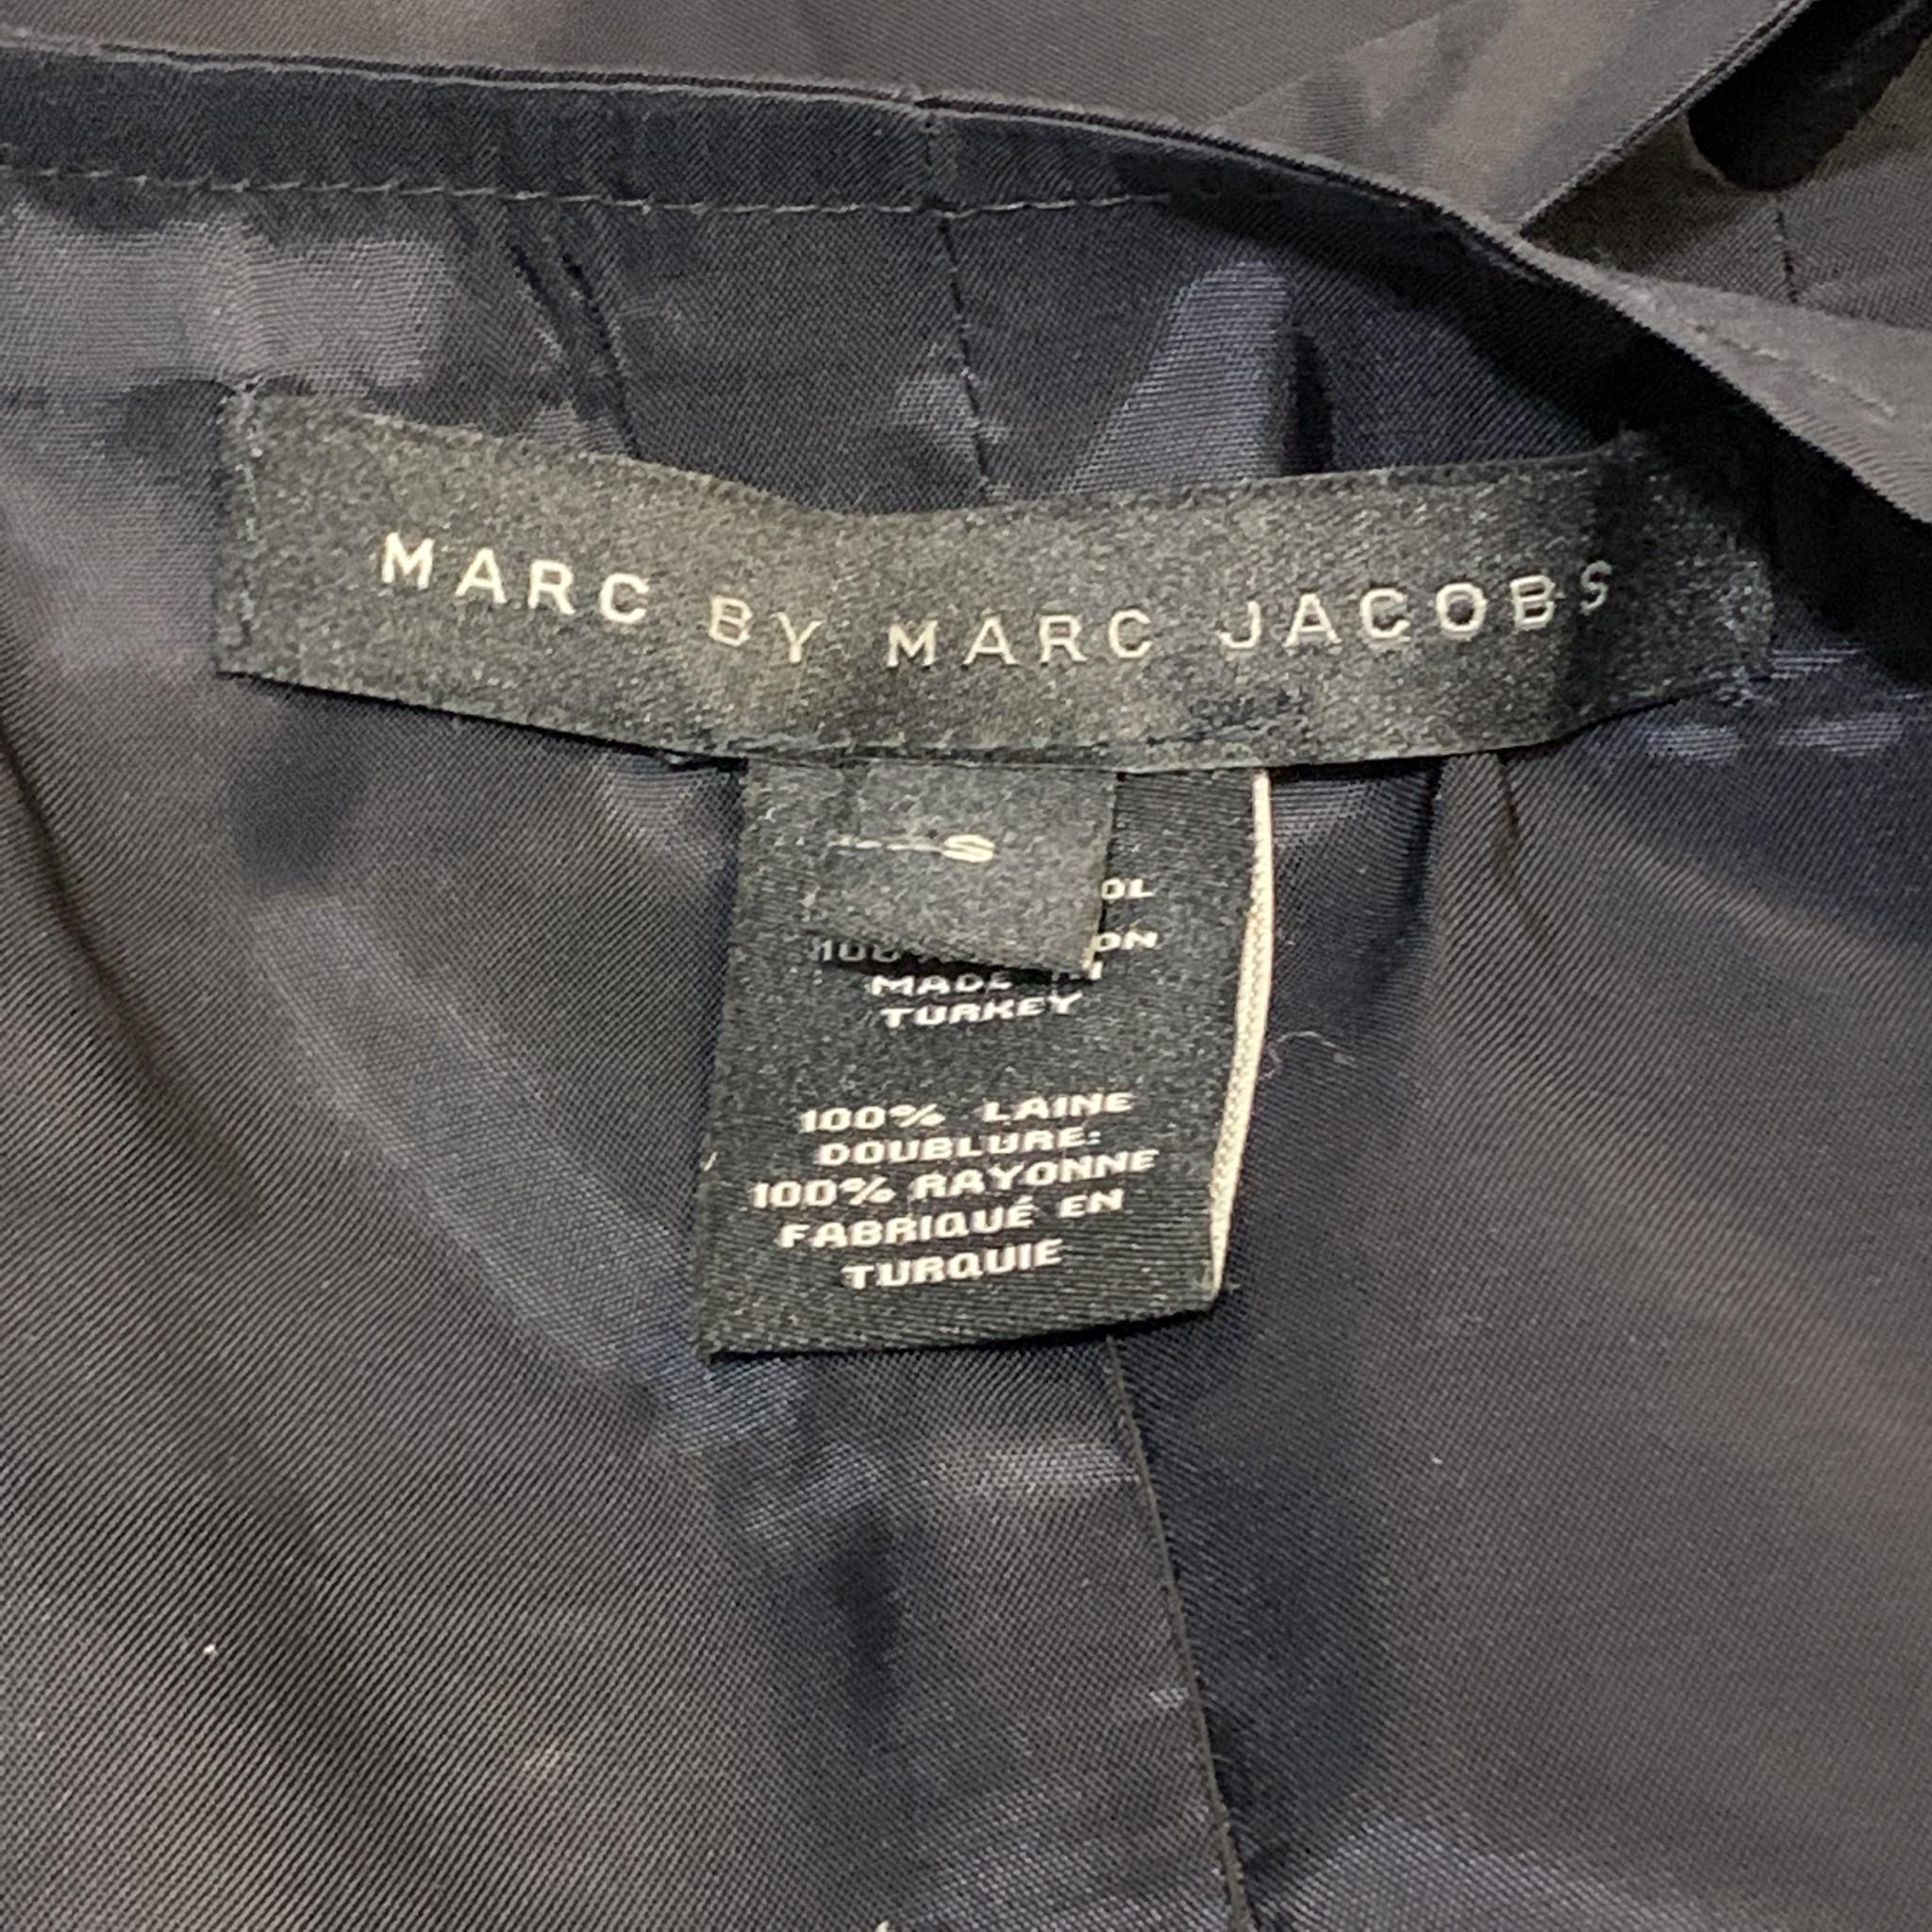 marc jacobs sweater vest